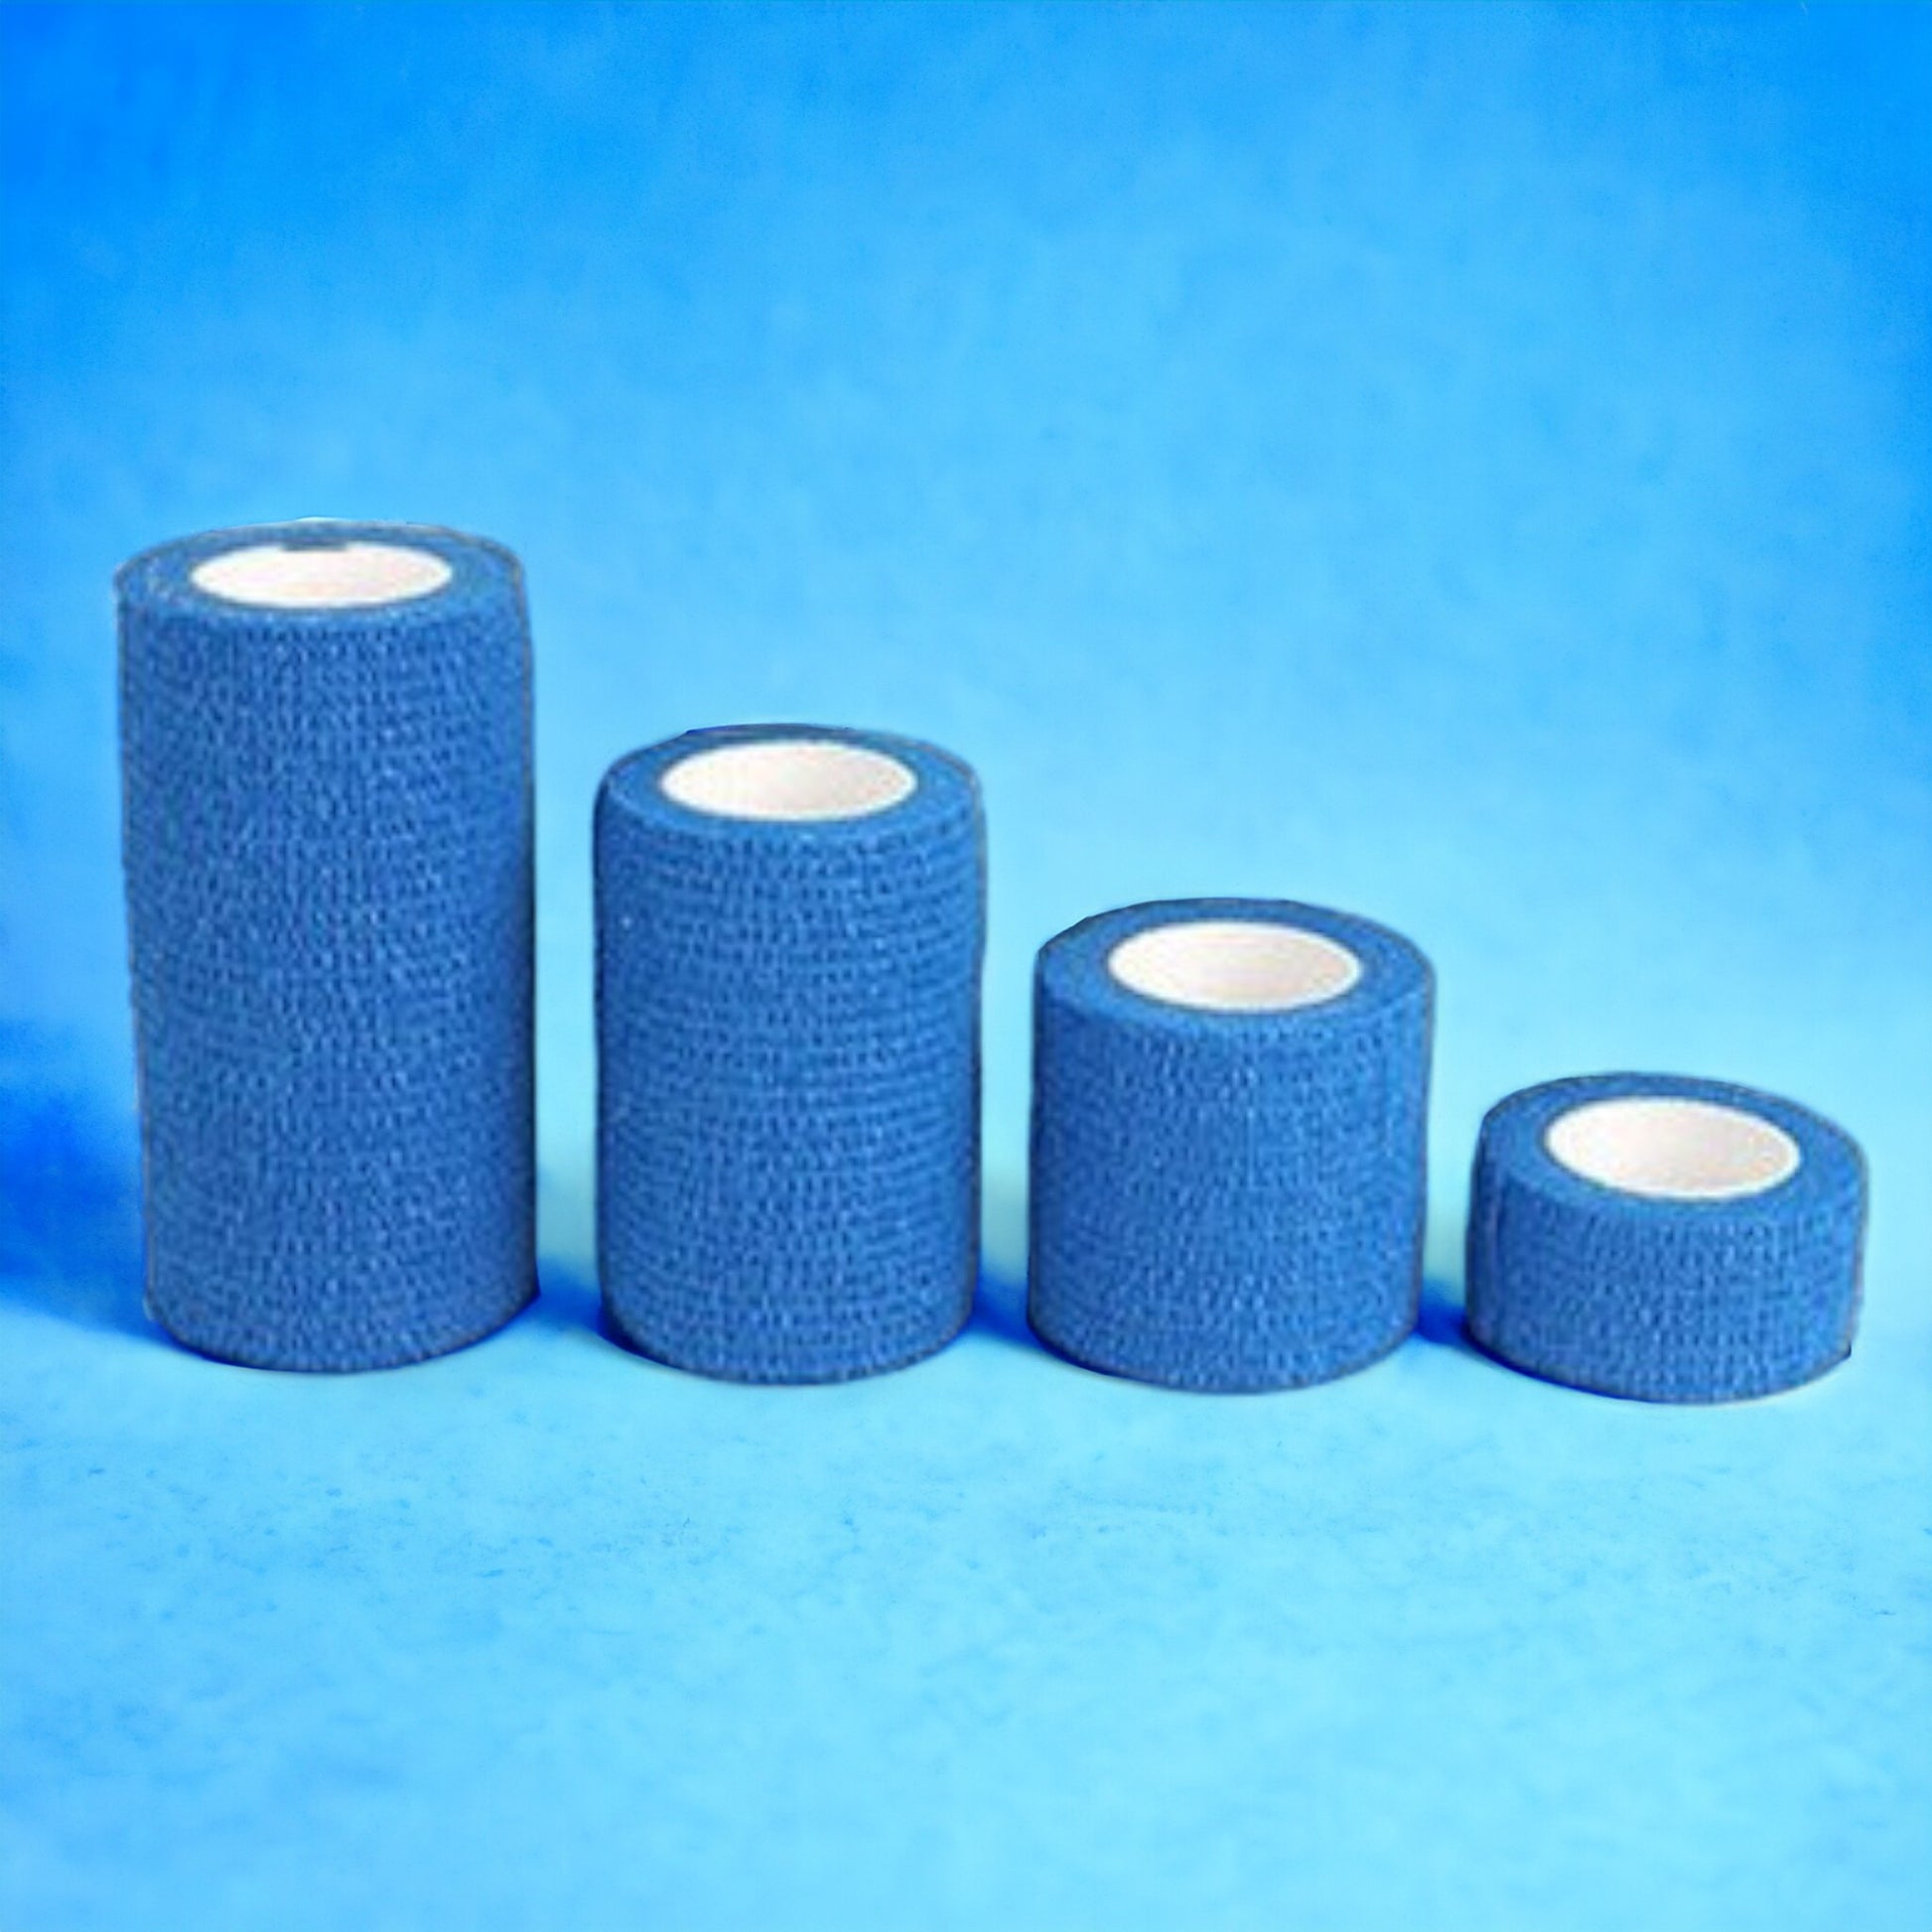 Hochwertiger elastischer Verband, selbstklebend - 10 cm x 4,5 m - blau - Set mit 12 Rollen für umfassende Anwendungen und lange Haltbarkeit.